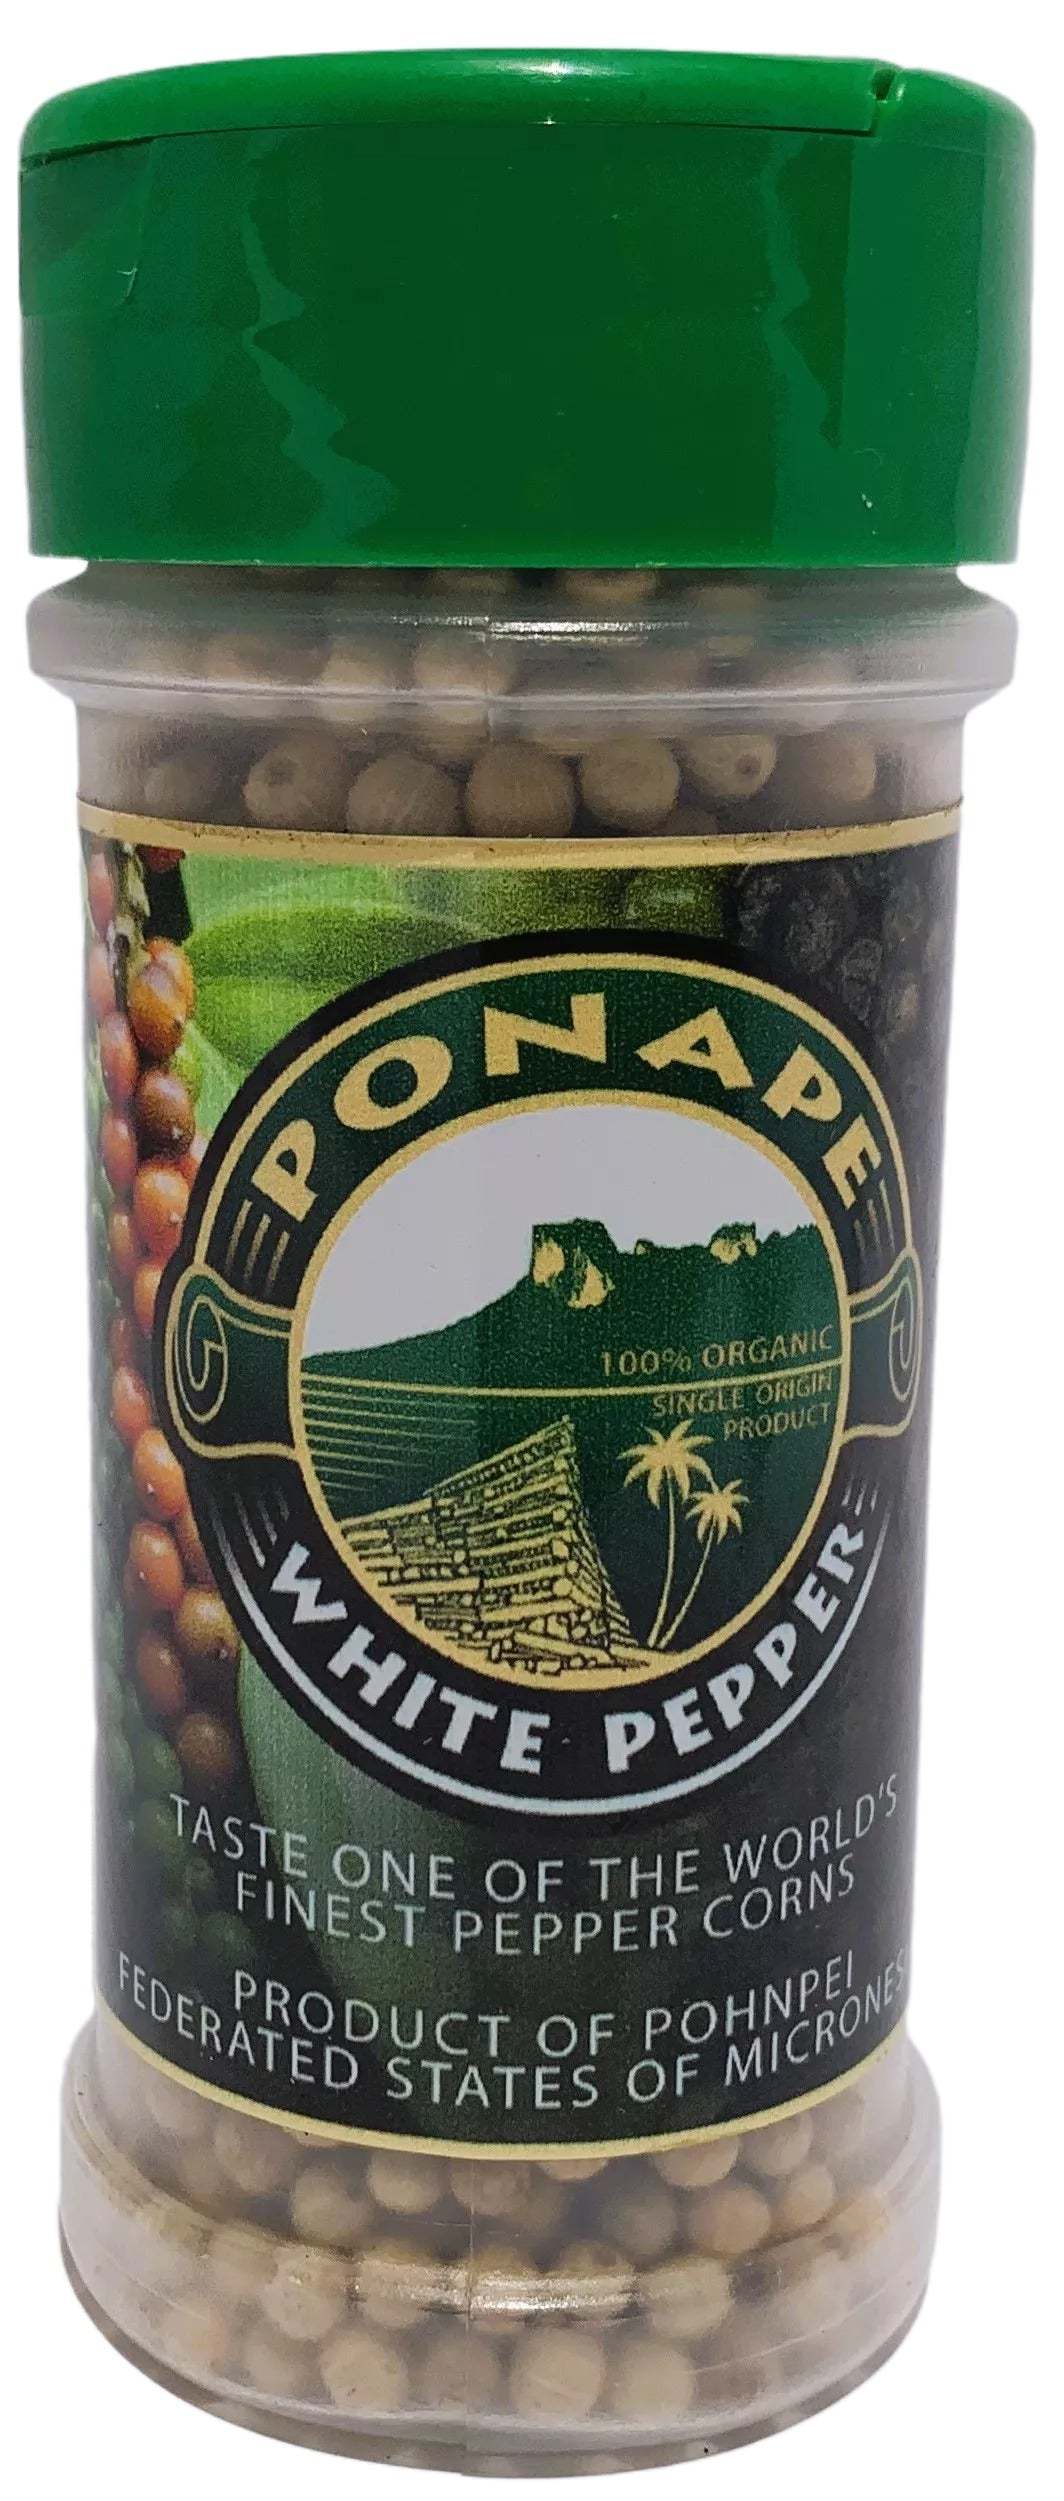 Pohnpei White Pepper